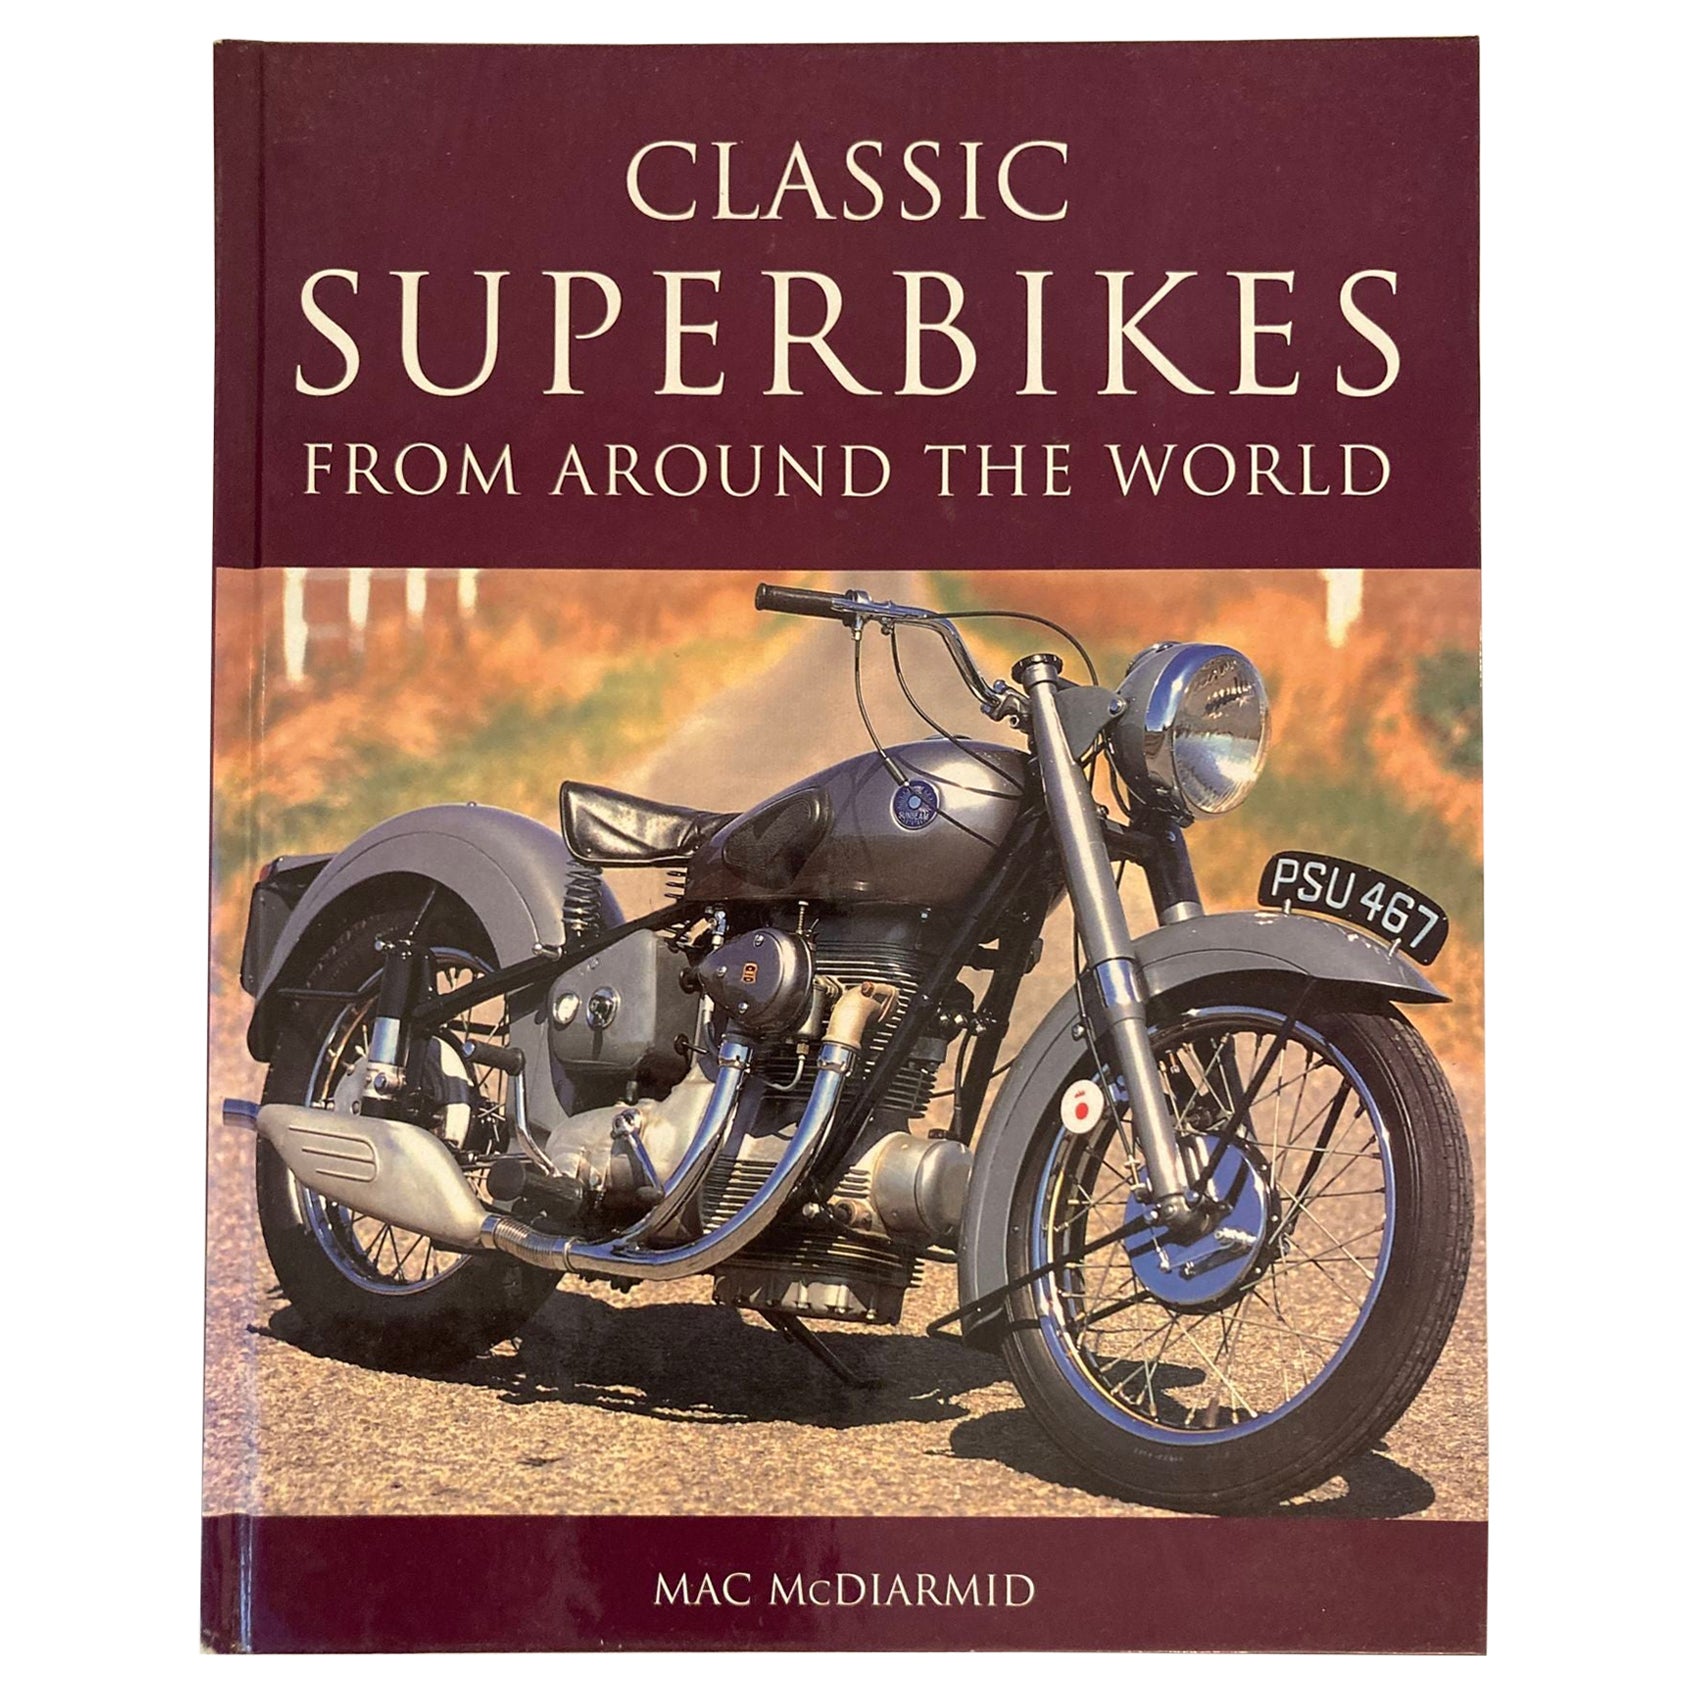 Klassische Superbikes aus der ganzen Welt, Couchtisch-Buch, Hardcover 2003